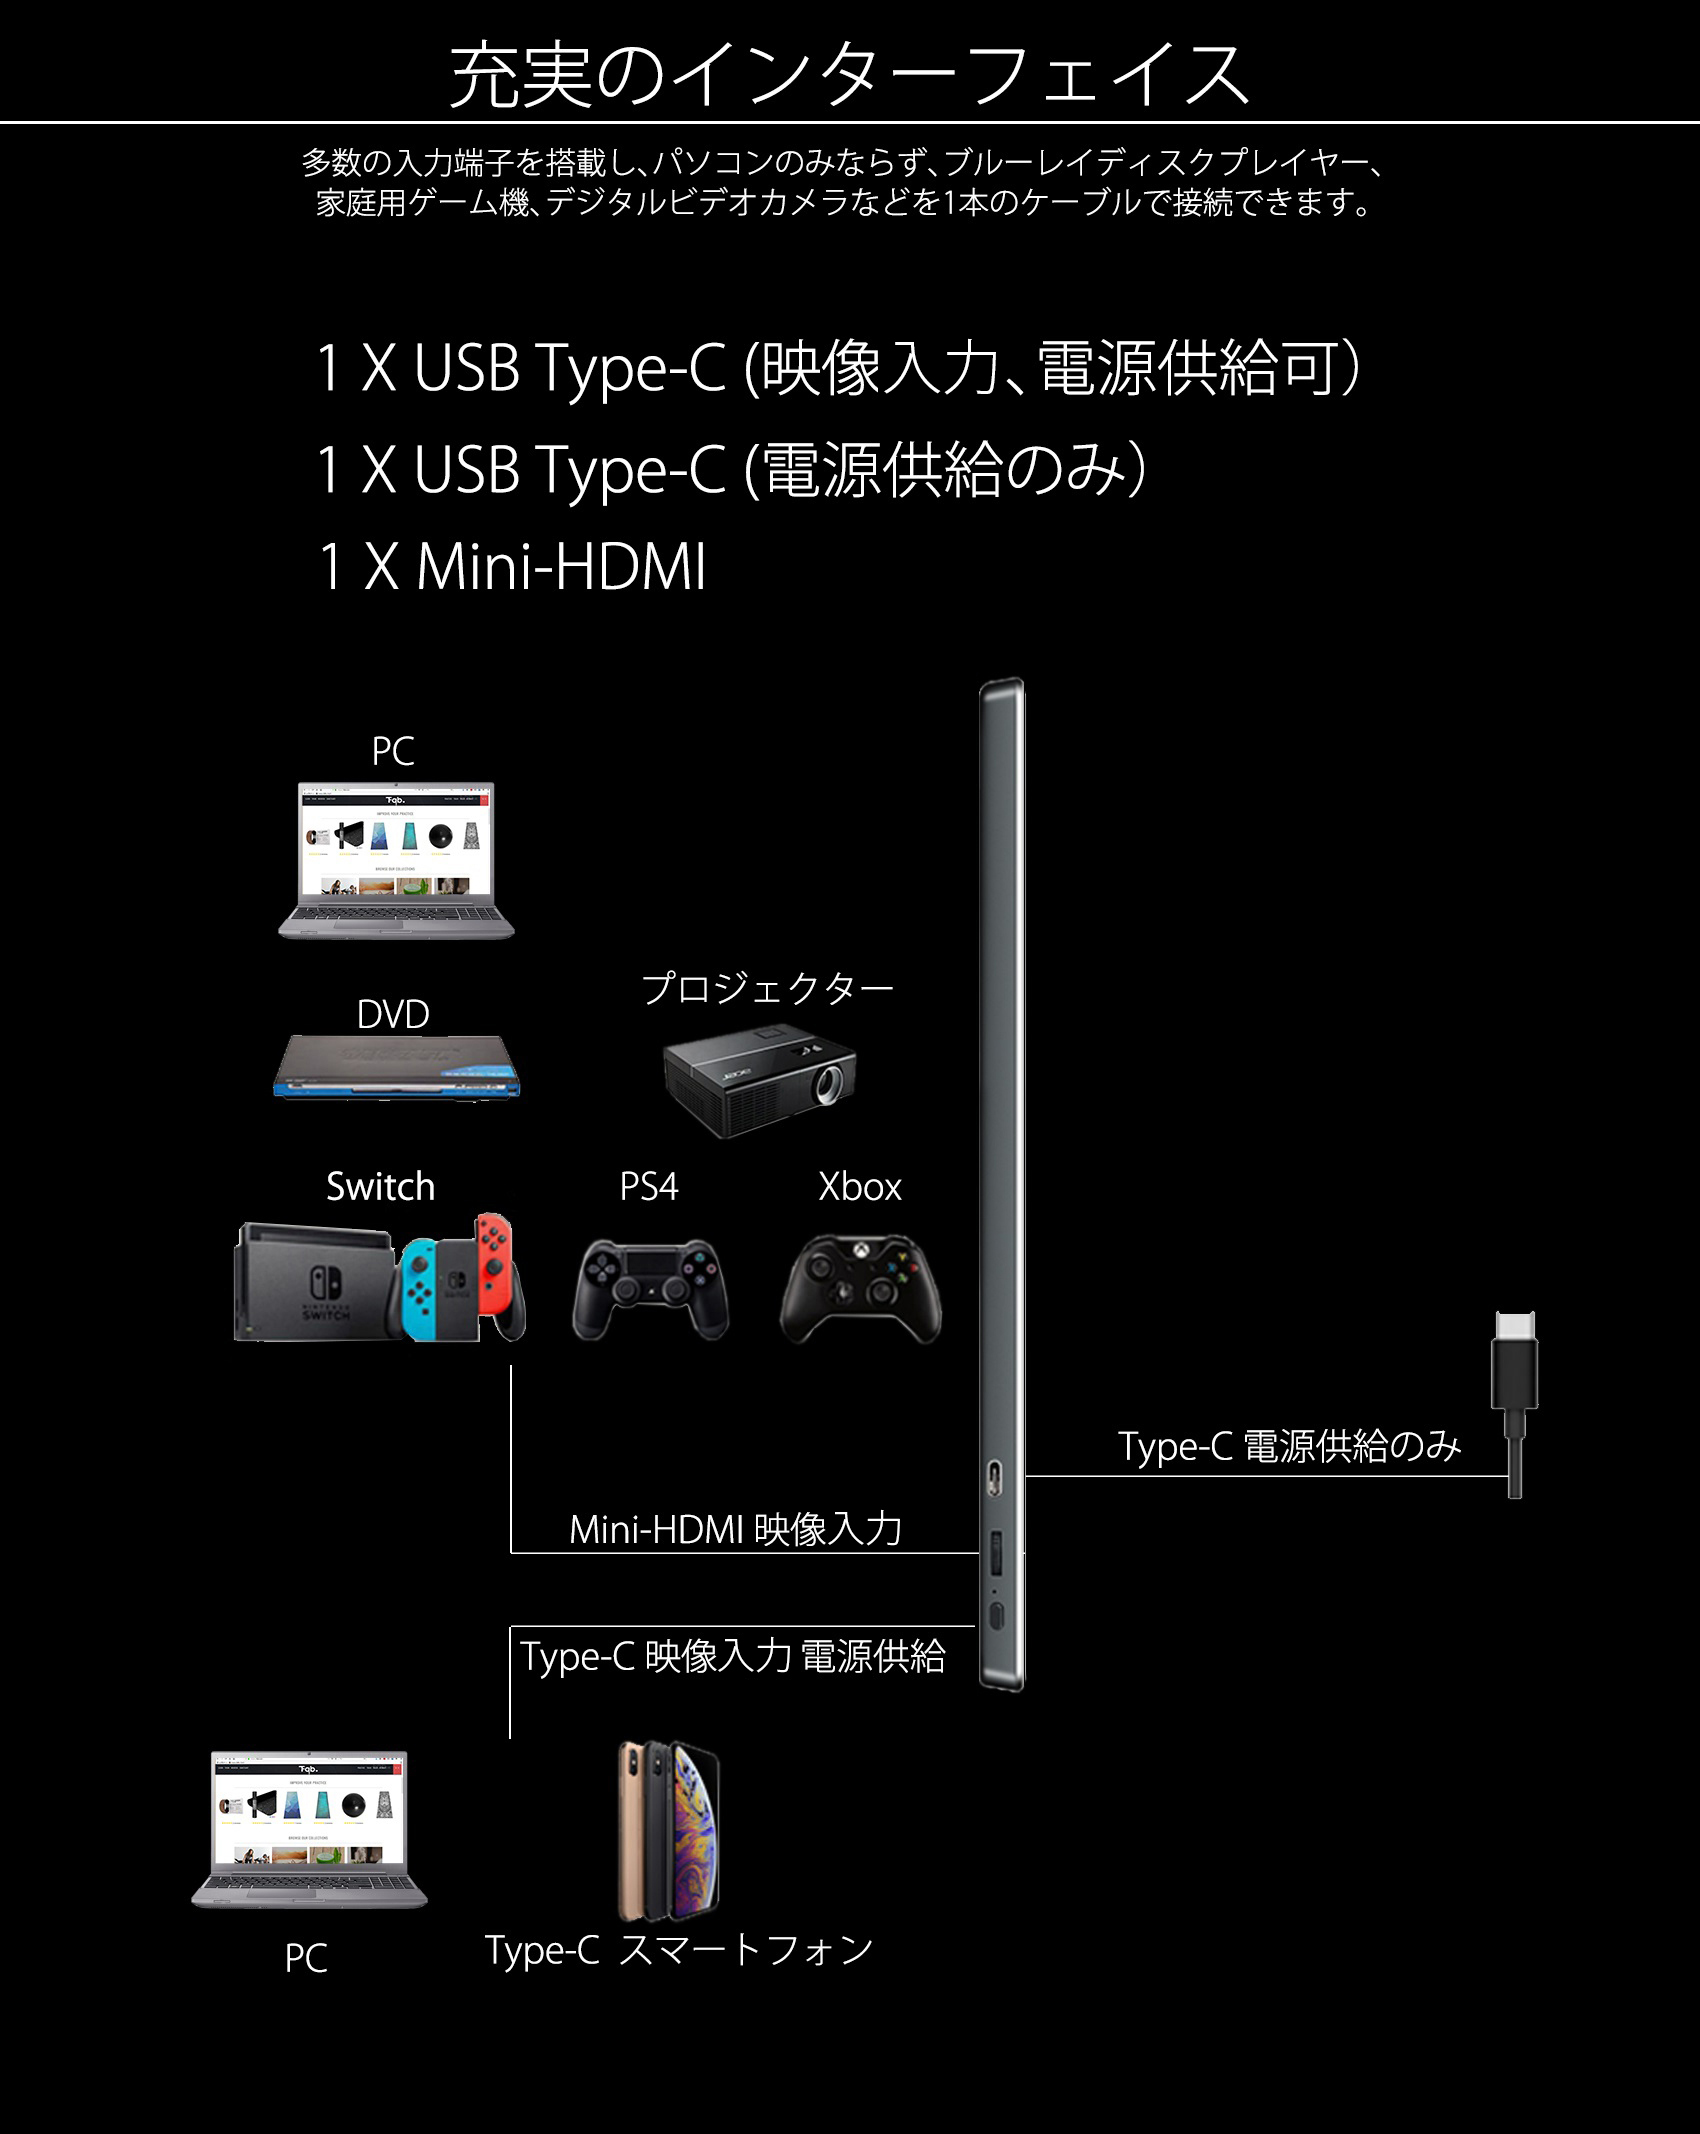 JAPANNEXT JN-MD-IPS1330FHDR (13.3型フルHD モバイルディスプレイ / Type-C HDR対応 IPSパネル) –  JAPANNEXT 4K WQHDなど超解像度、ゲーミング、曲面など特殊液晶モニター